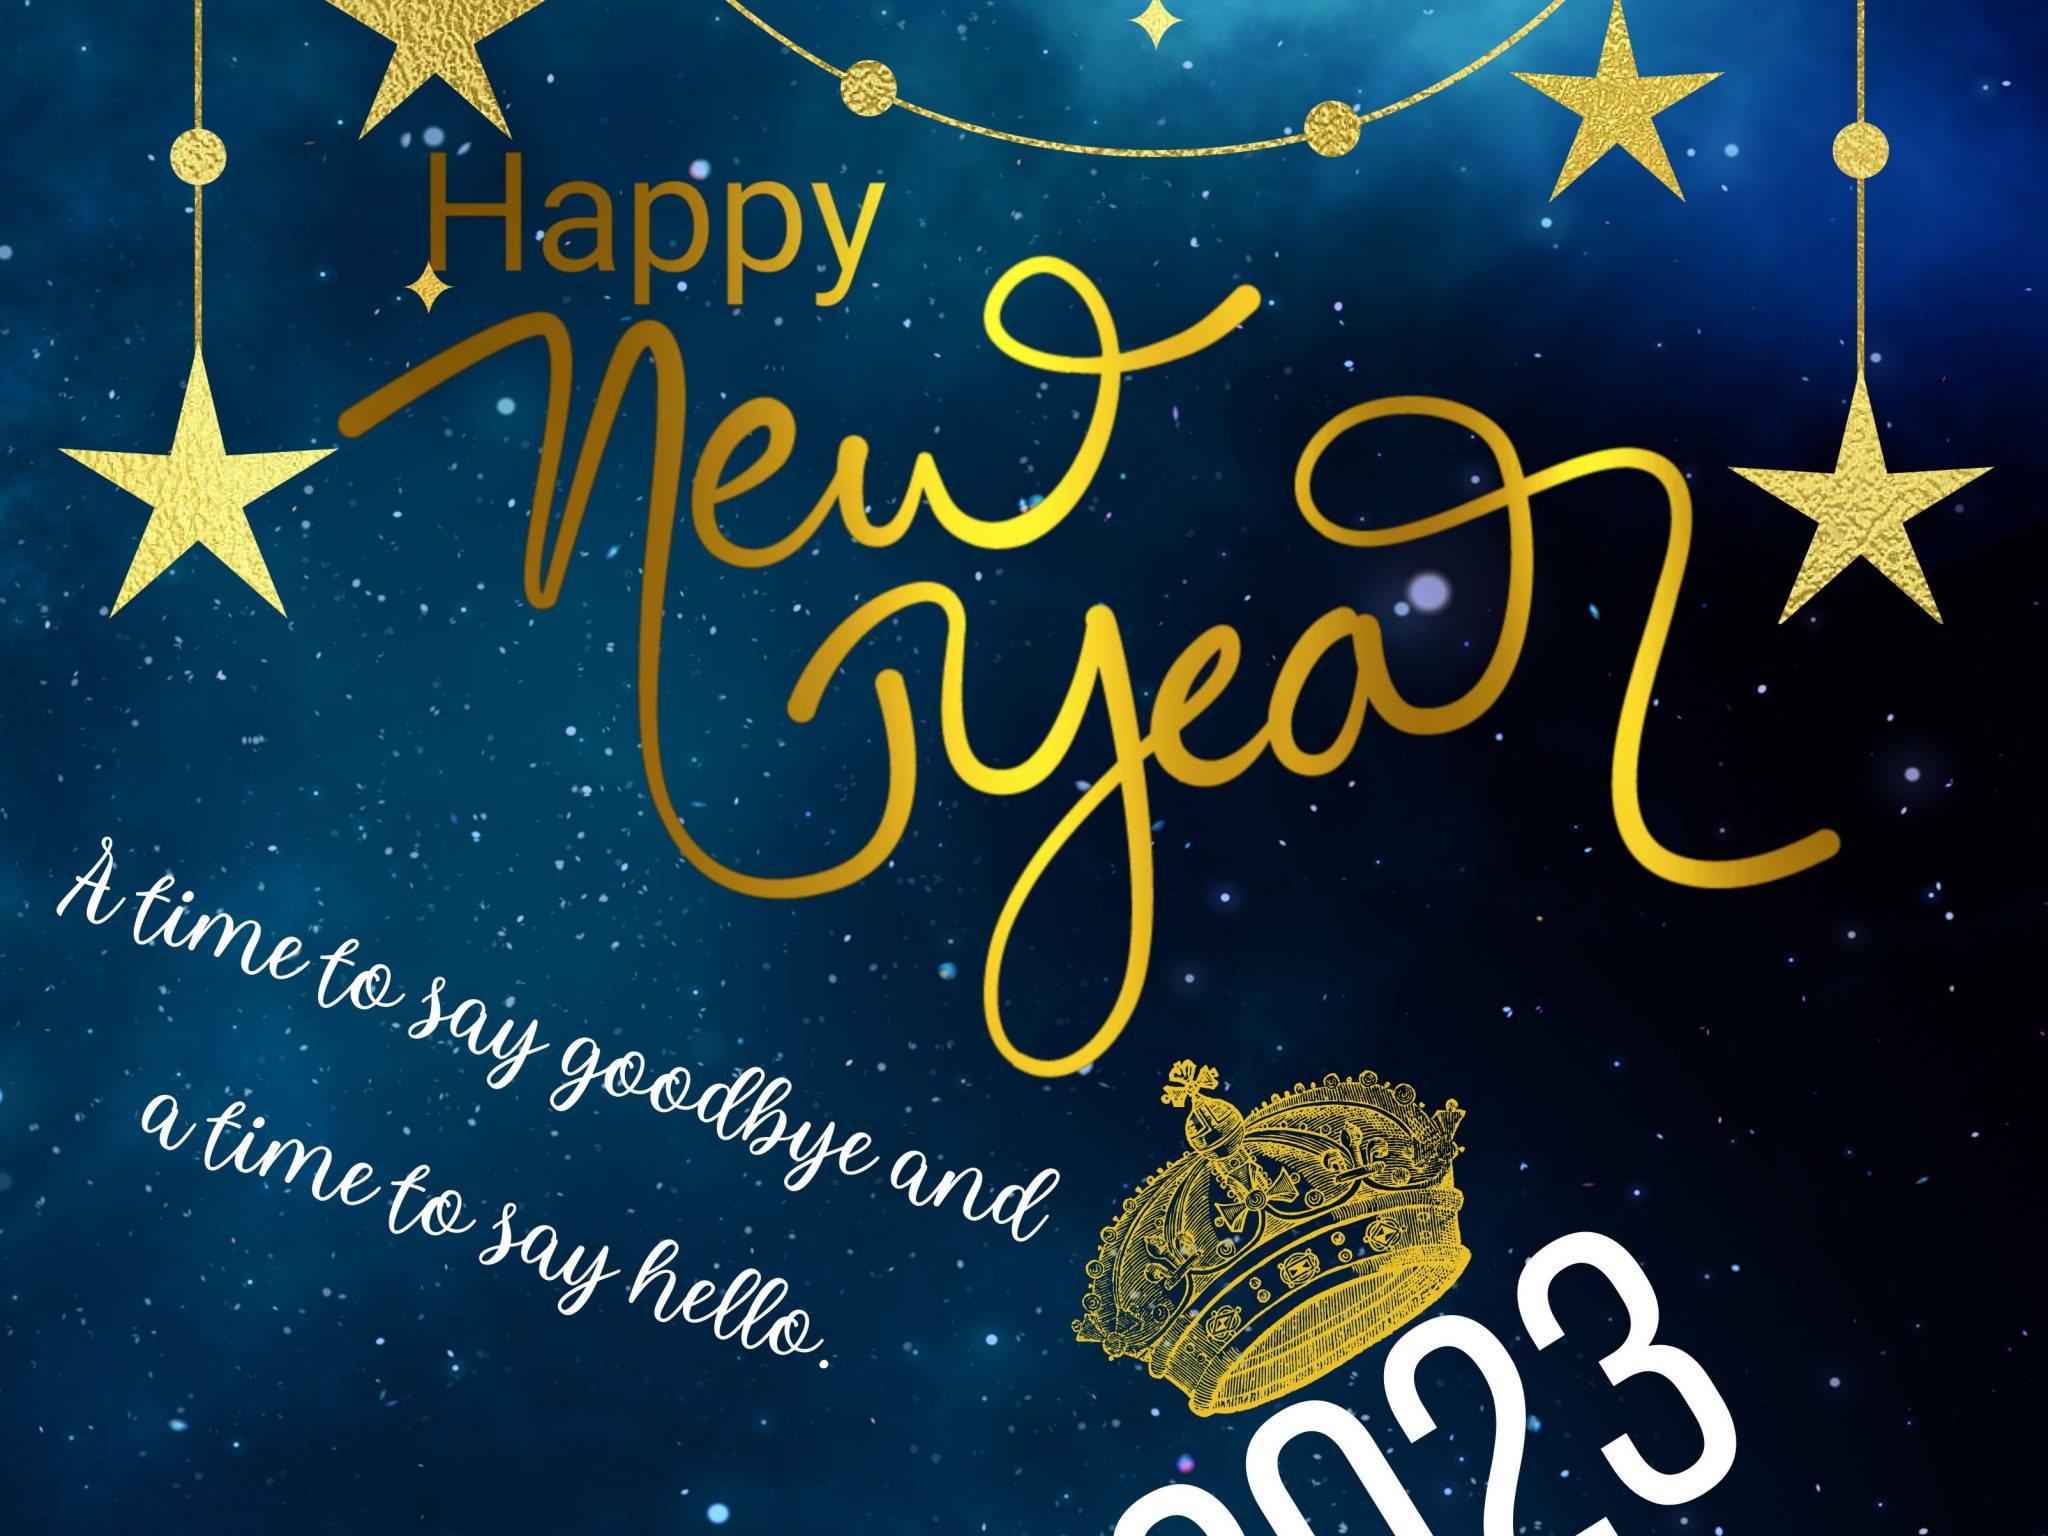 2048x1536 wallpaper 2023 New Year HD Wallpaper iPad 2048x1536 pixels resolution